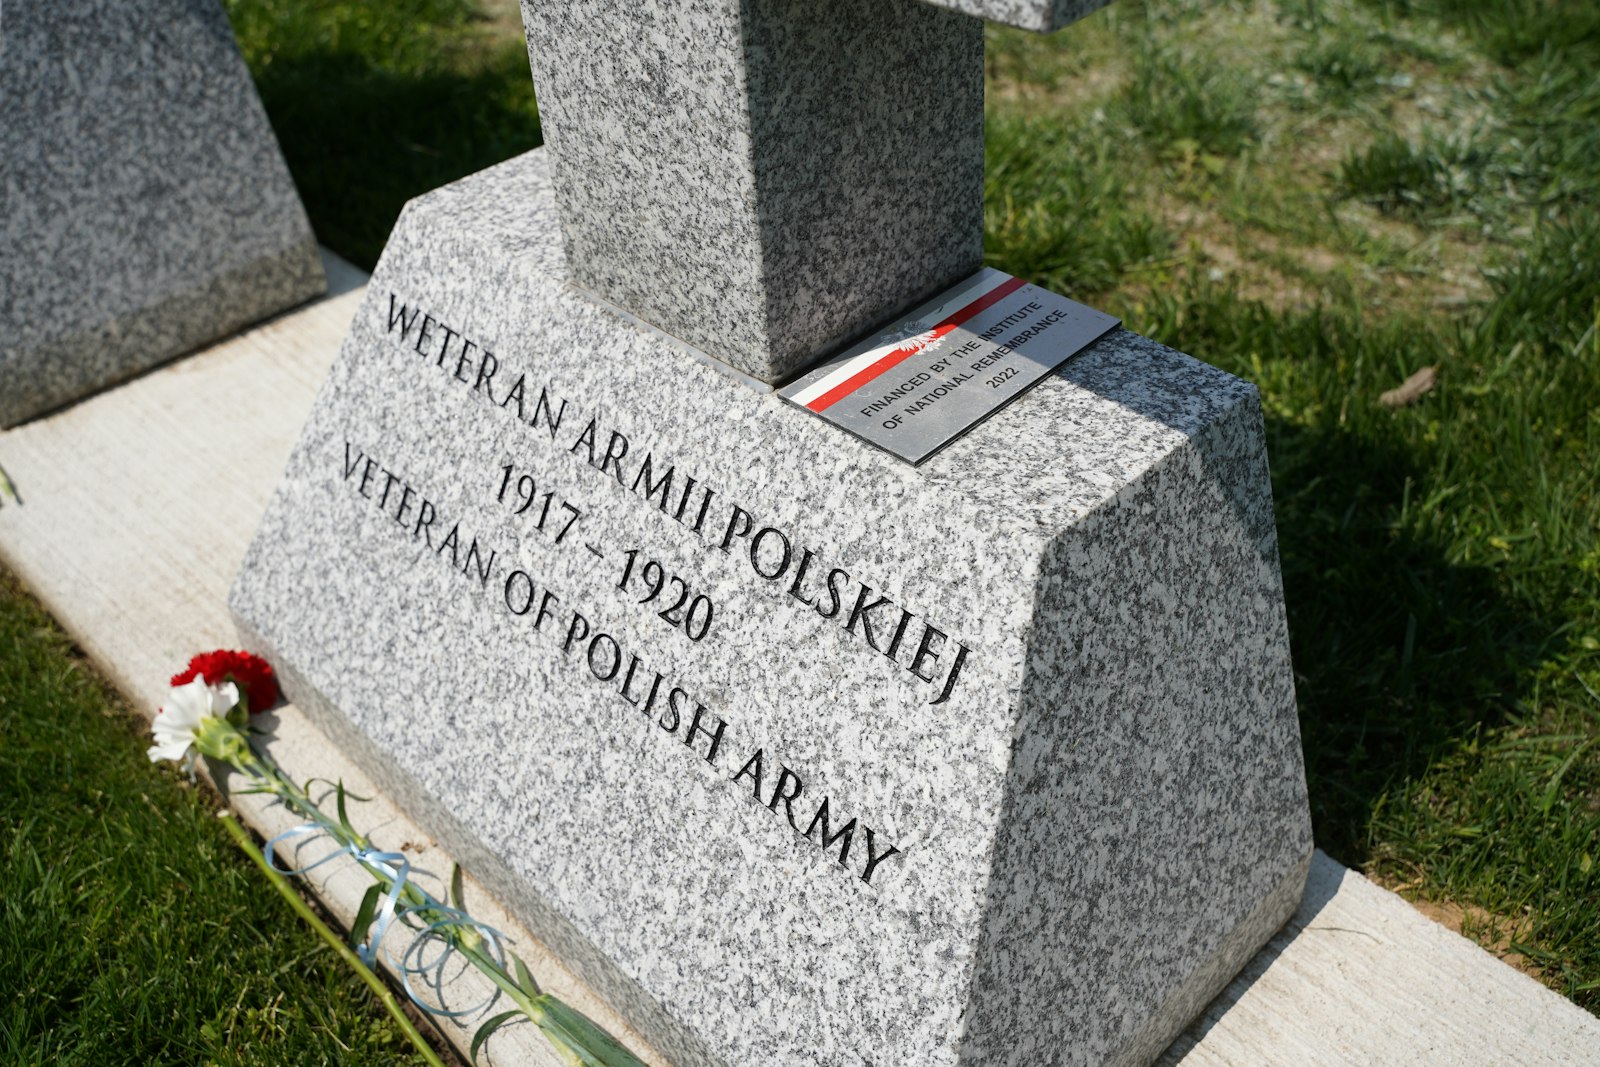 Wolontariuszka Henrietta Nowakowski współpracowała z Polskim Instytutem Kultury i Badań Naukowych w Orchard Lake Schools oraz polskim rządem, aby zidentyfikować 59 polskich weteranów wojennych pochowanych w Bazylice Grobu Pańskiego.